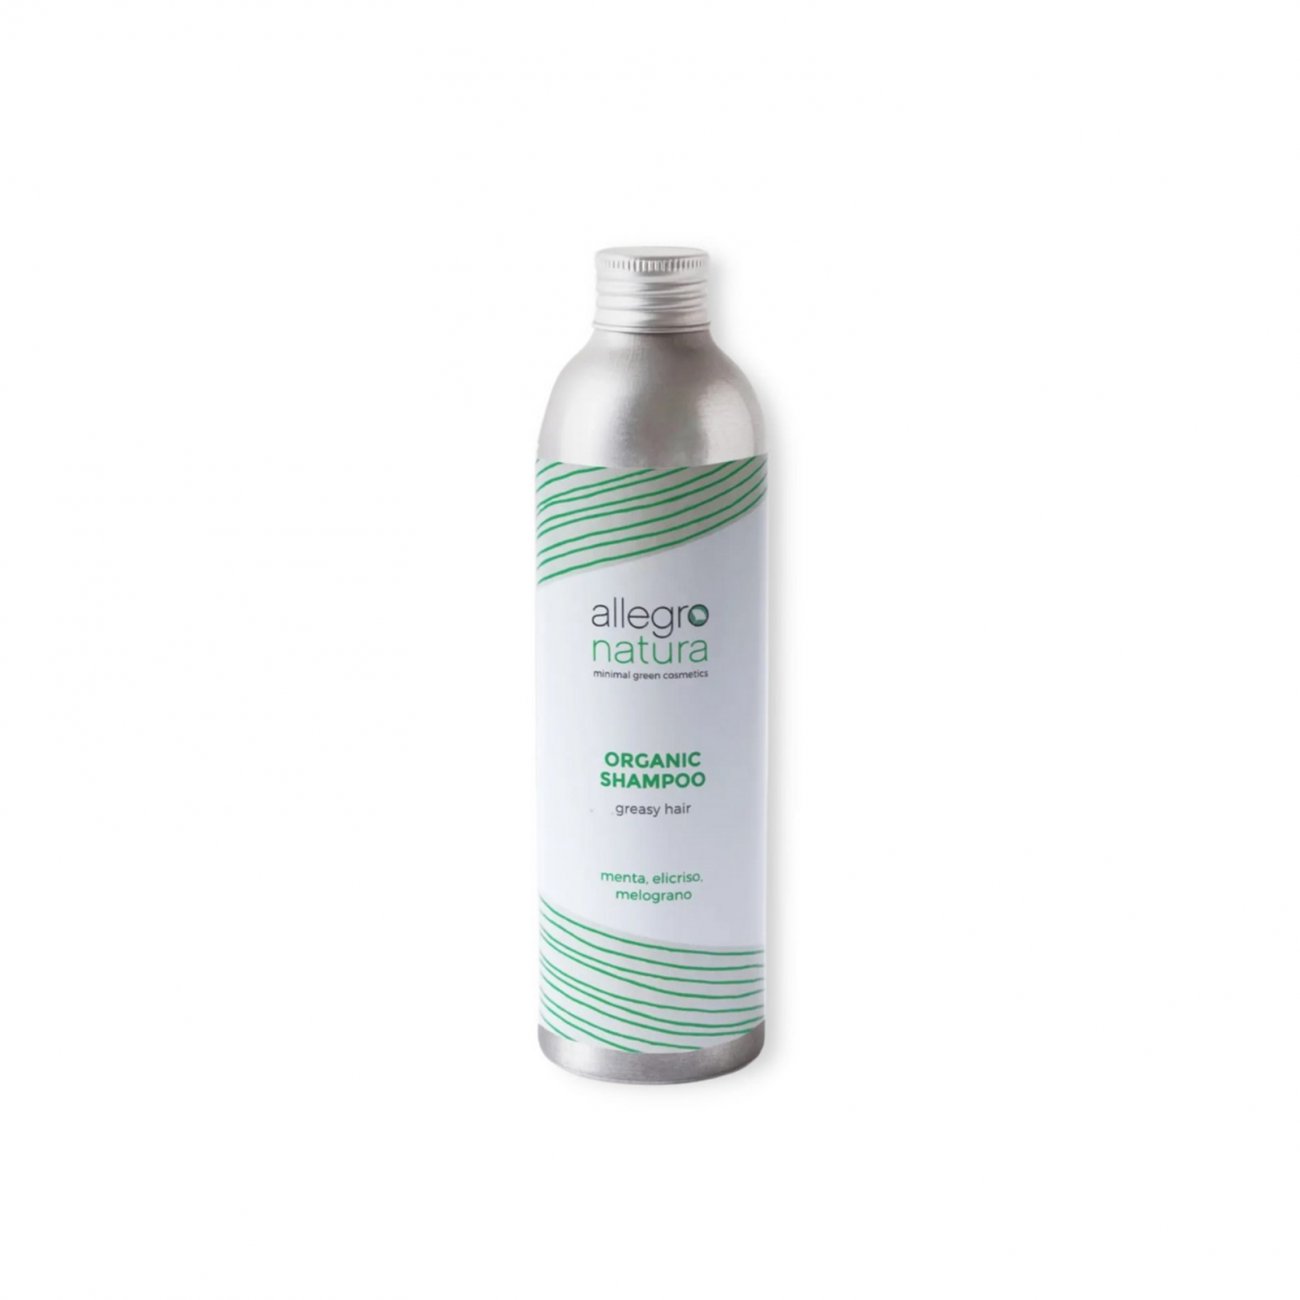 Buy Allegro Organic Shampoo For Greasy Hair 250ml (6.76 fl oz) ·